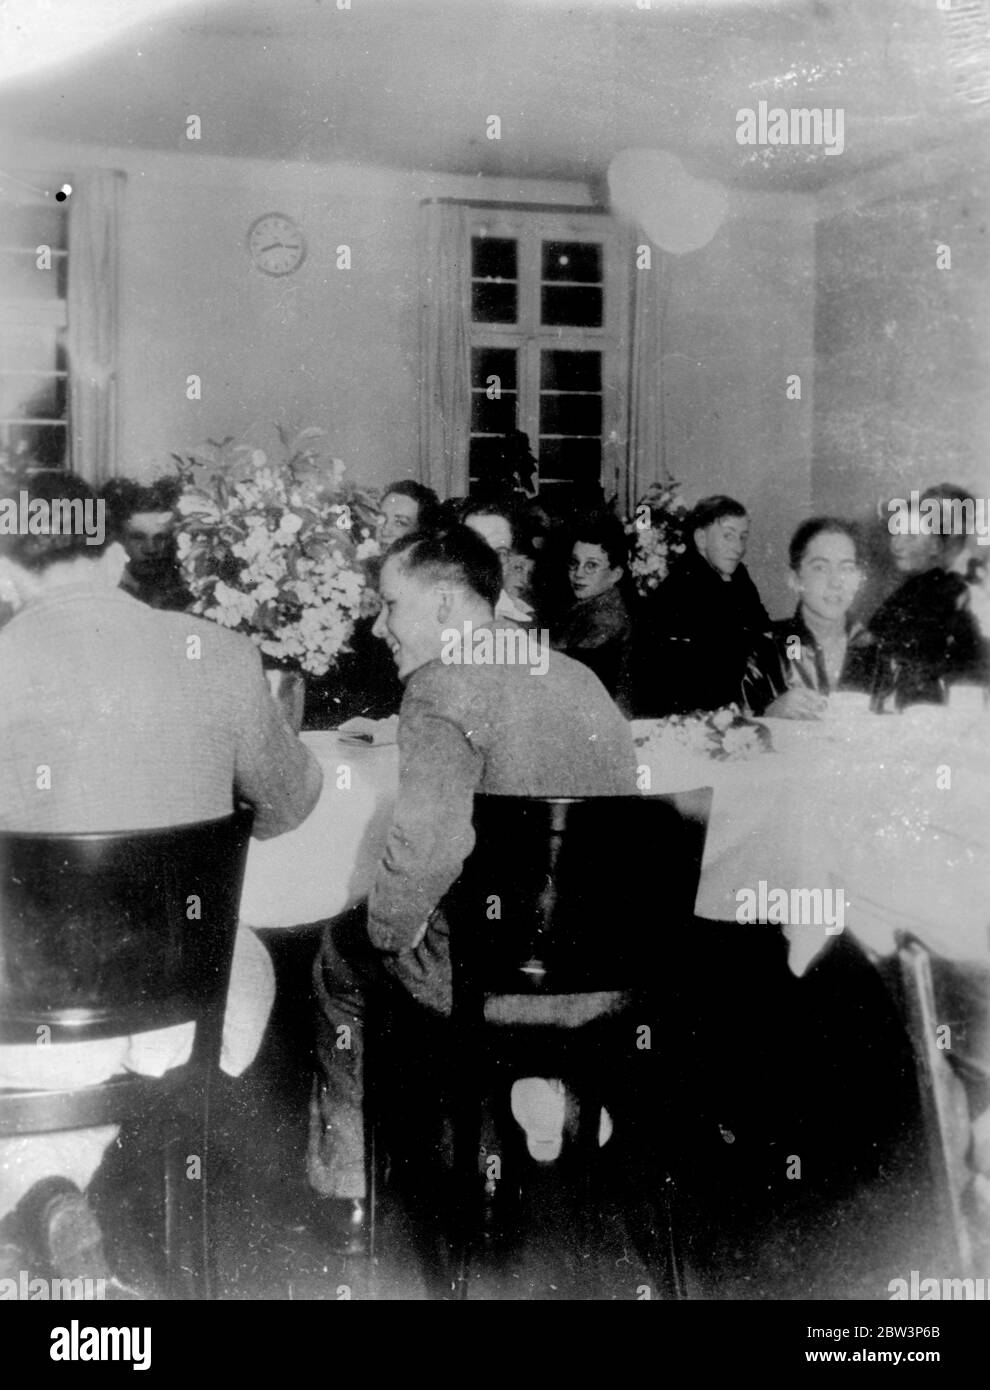 London Jungen sicher nach Black Forest Berg Tortur, sagte, dass fünf Kameraden starben. Unwissend, dass fünf ihrer Kameraden umgekommen waren, lachte der Rest der Londoner Jungs, die in einem Schneesturm auf einem Schwarzwaldberg gefangen waren, und scherzte über die erschreckende Erfahrung, als sie nach der Rettung in Feiburg ein Essen genossen. Sie wurden später von ihrer Tradition erzählt. Foto zeigt, die Londoner Jungs genießen ein Essen in Freiburg nach ihrer Rettung. 20. April 1936 Stockfoto